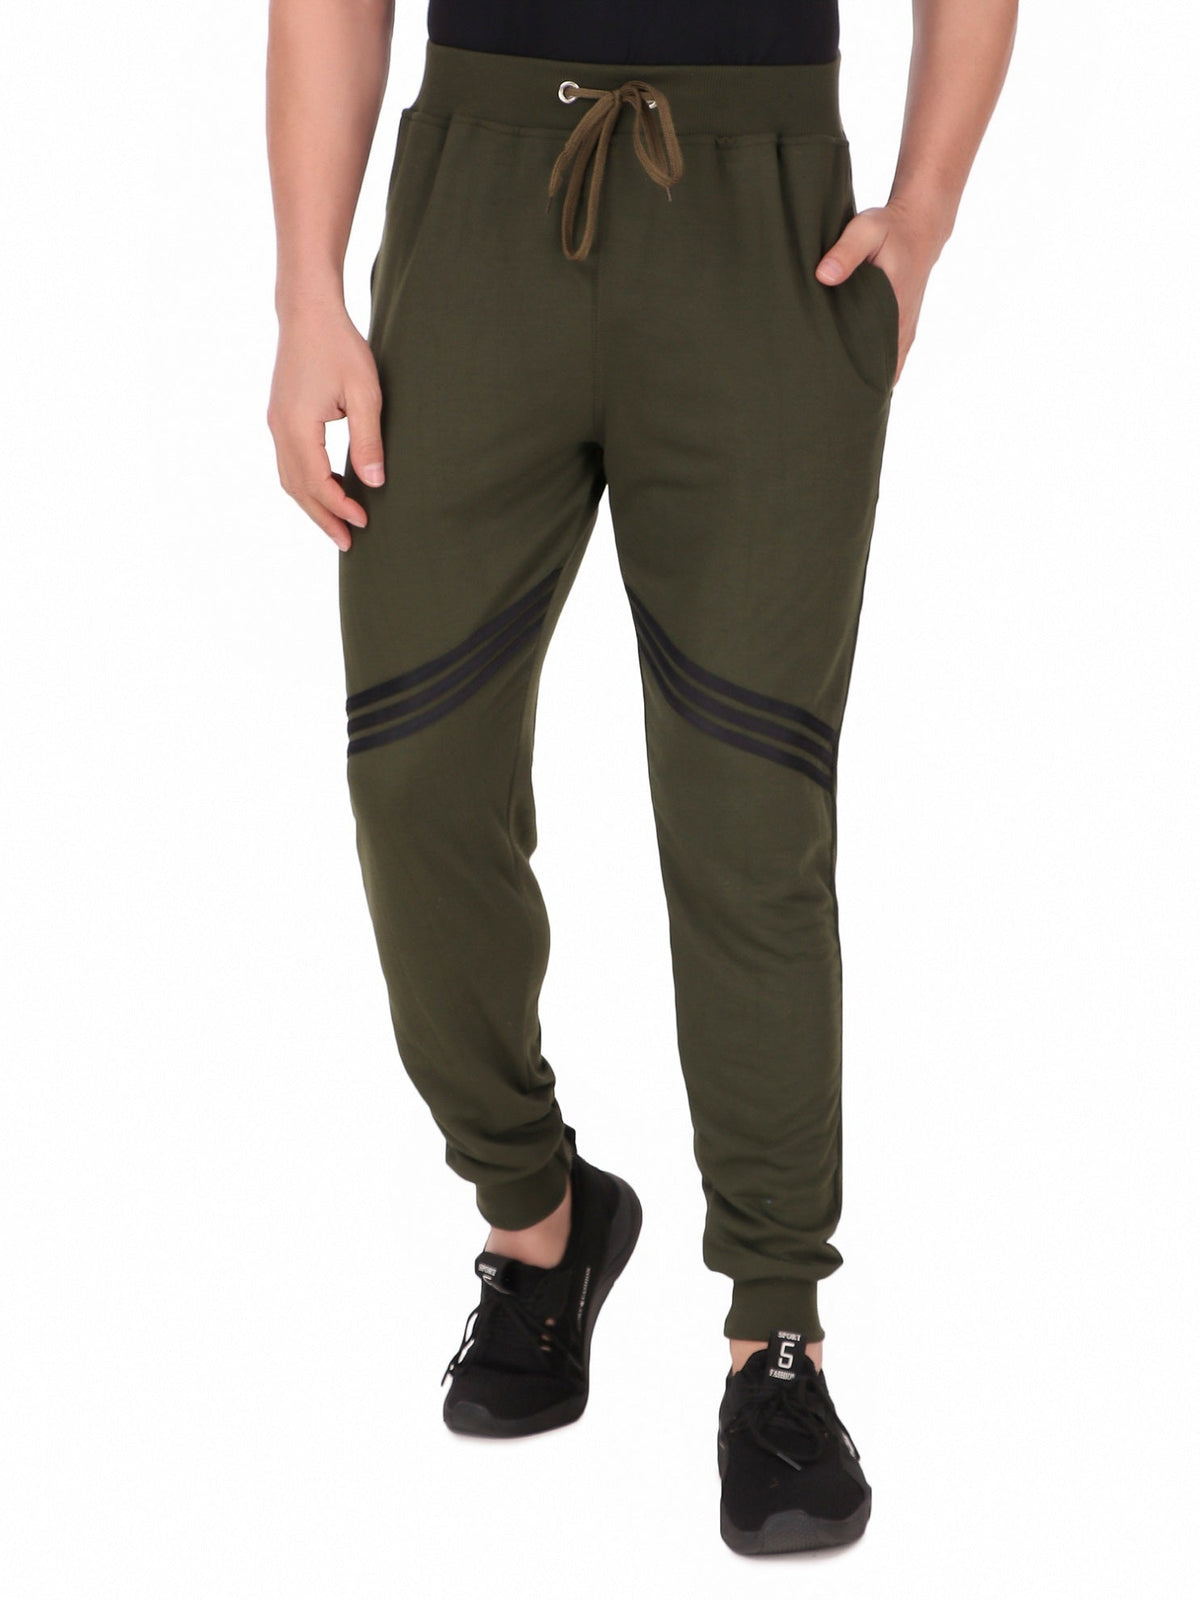 Jockey Men's Cotton Track Pants Loungewear, Leisurewear Sportswear Relaxed  Fit | eBay